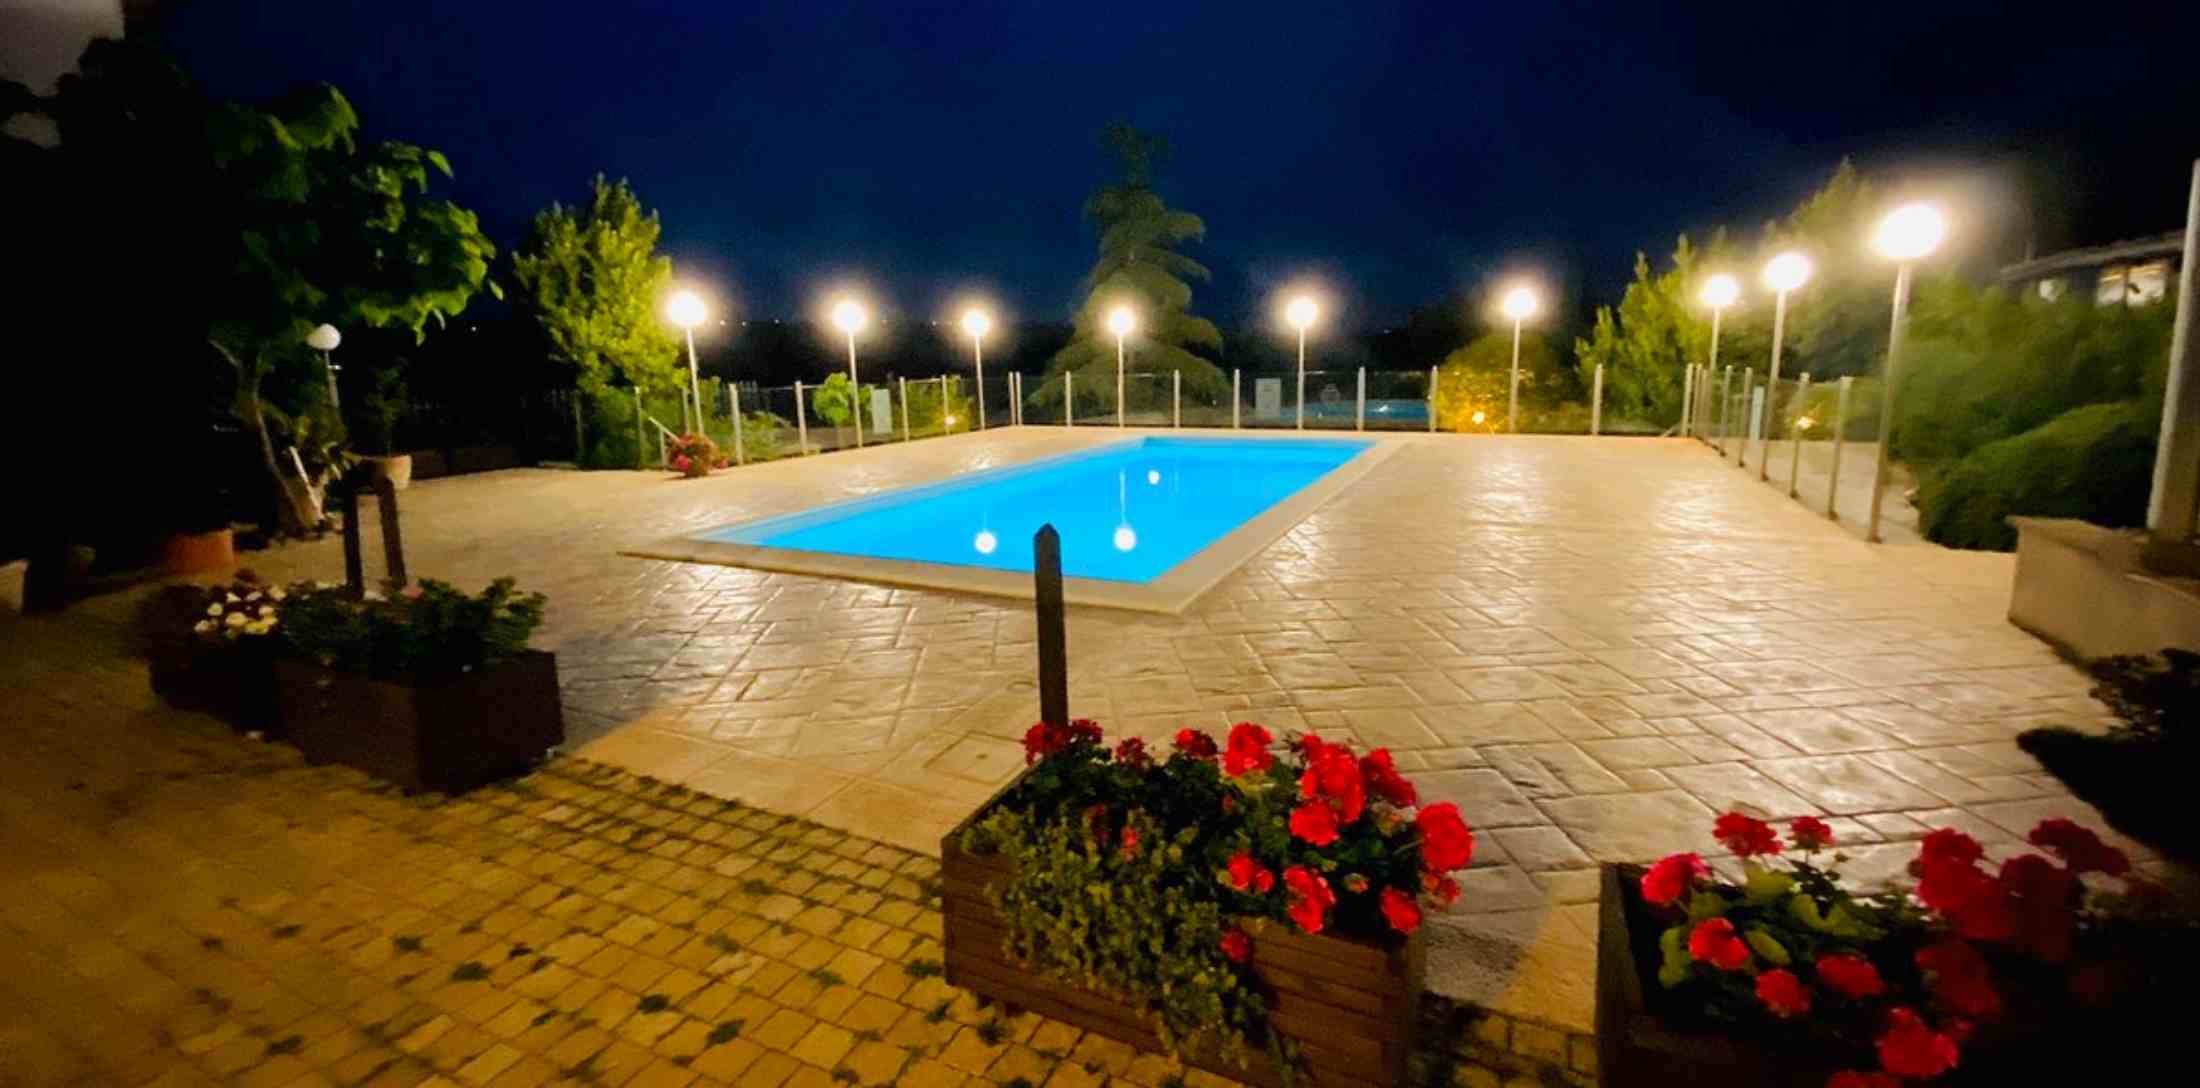 La piscina nel giardino del ristorante Il Convento a Otricoli